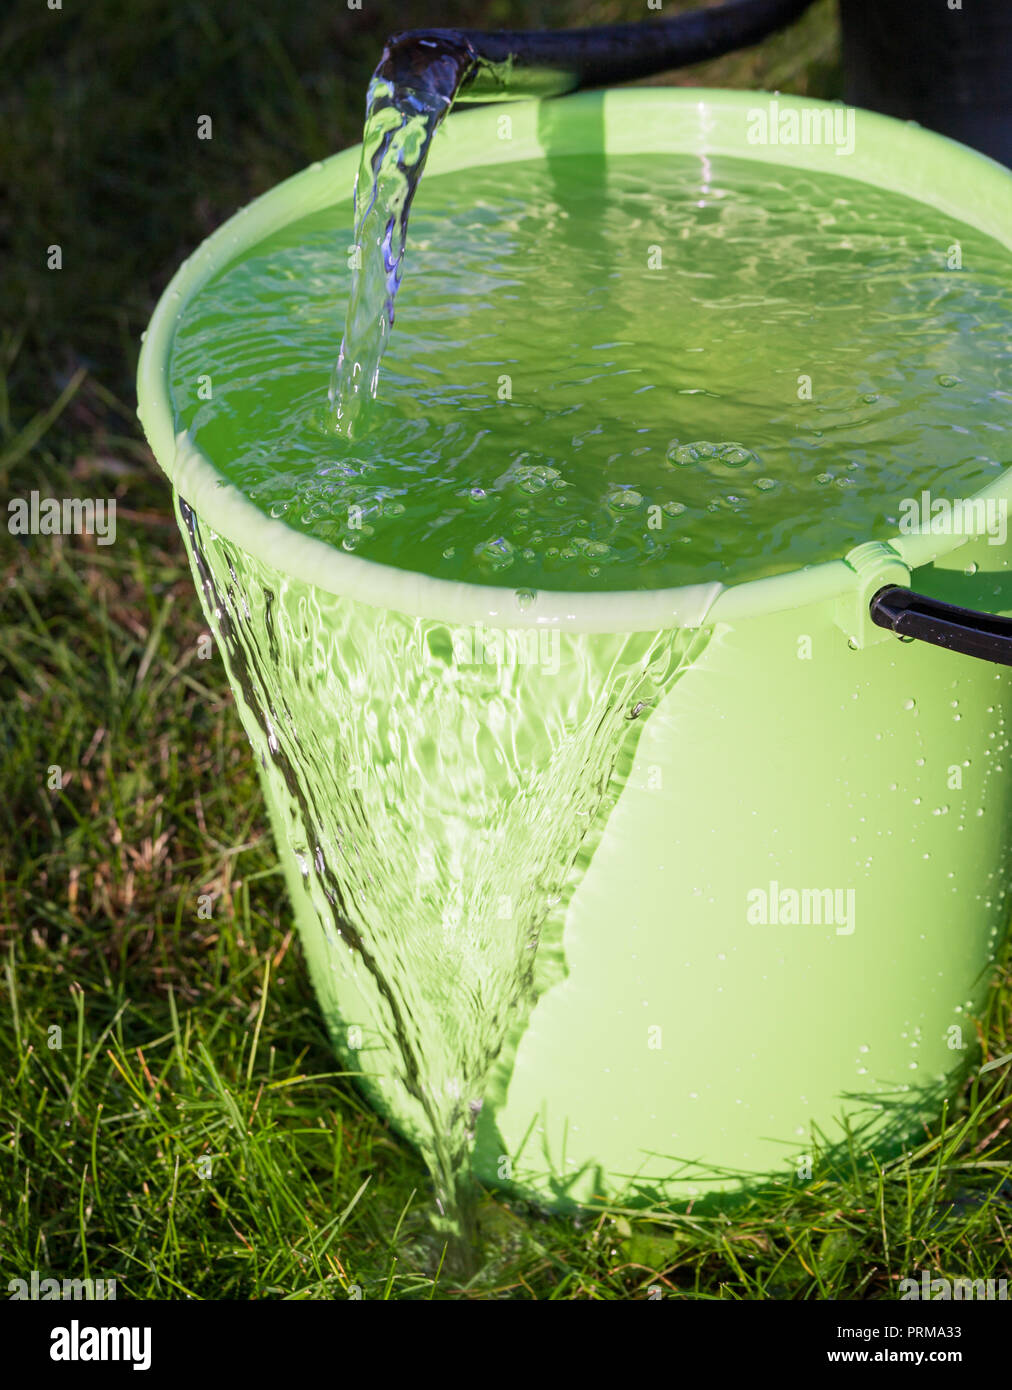 Seau plein d'eau dans la campagne Photo Stock - Alamy